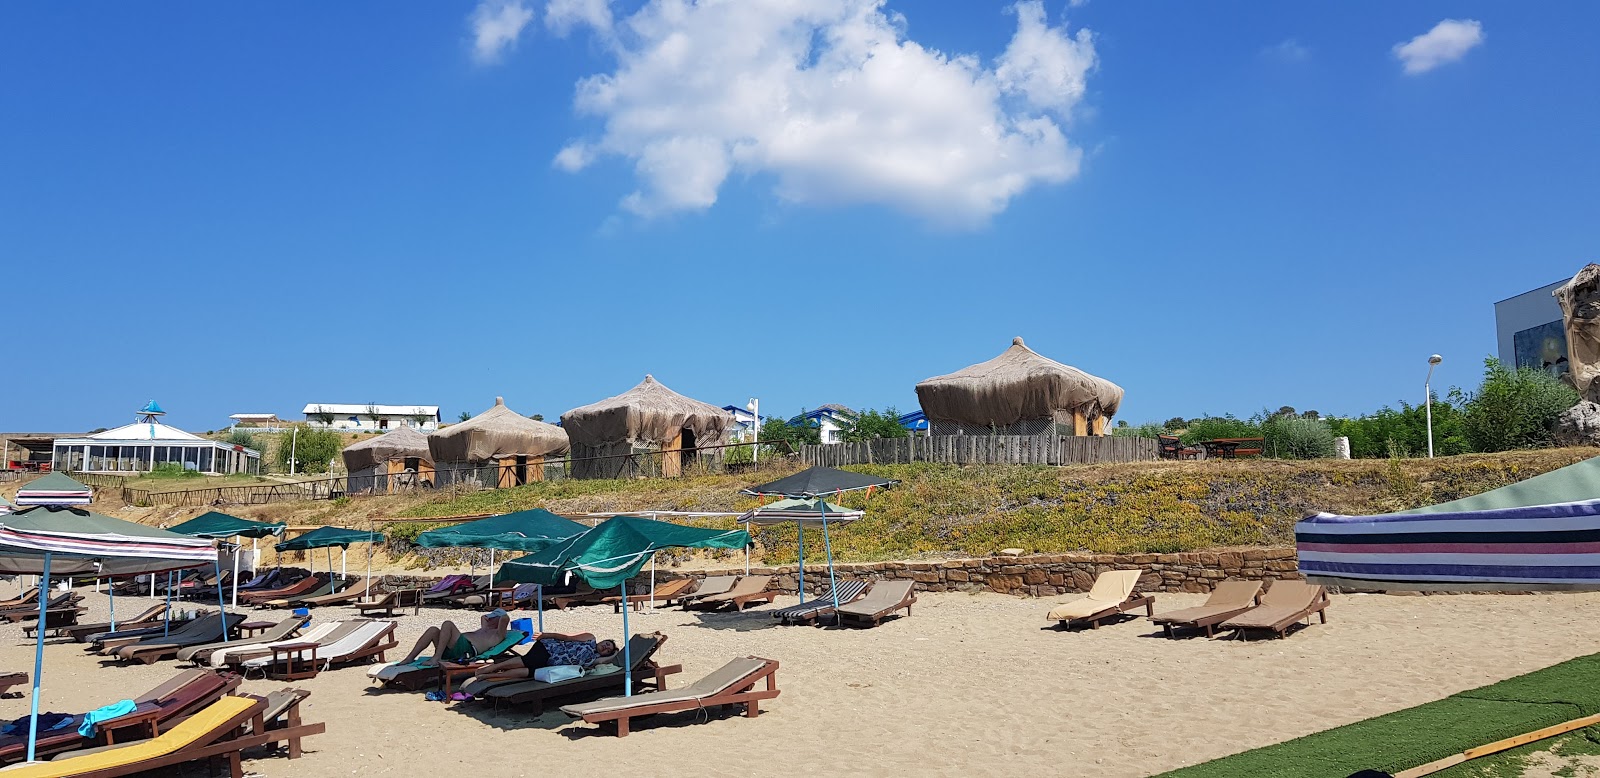 Foto de Ugurlu beach II - lugar popular entre os apreciadores de relaxamento